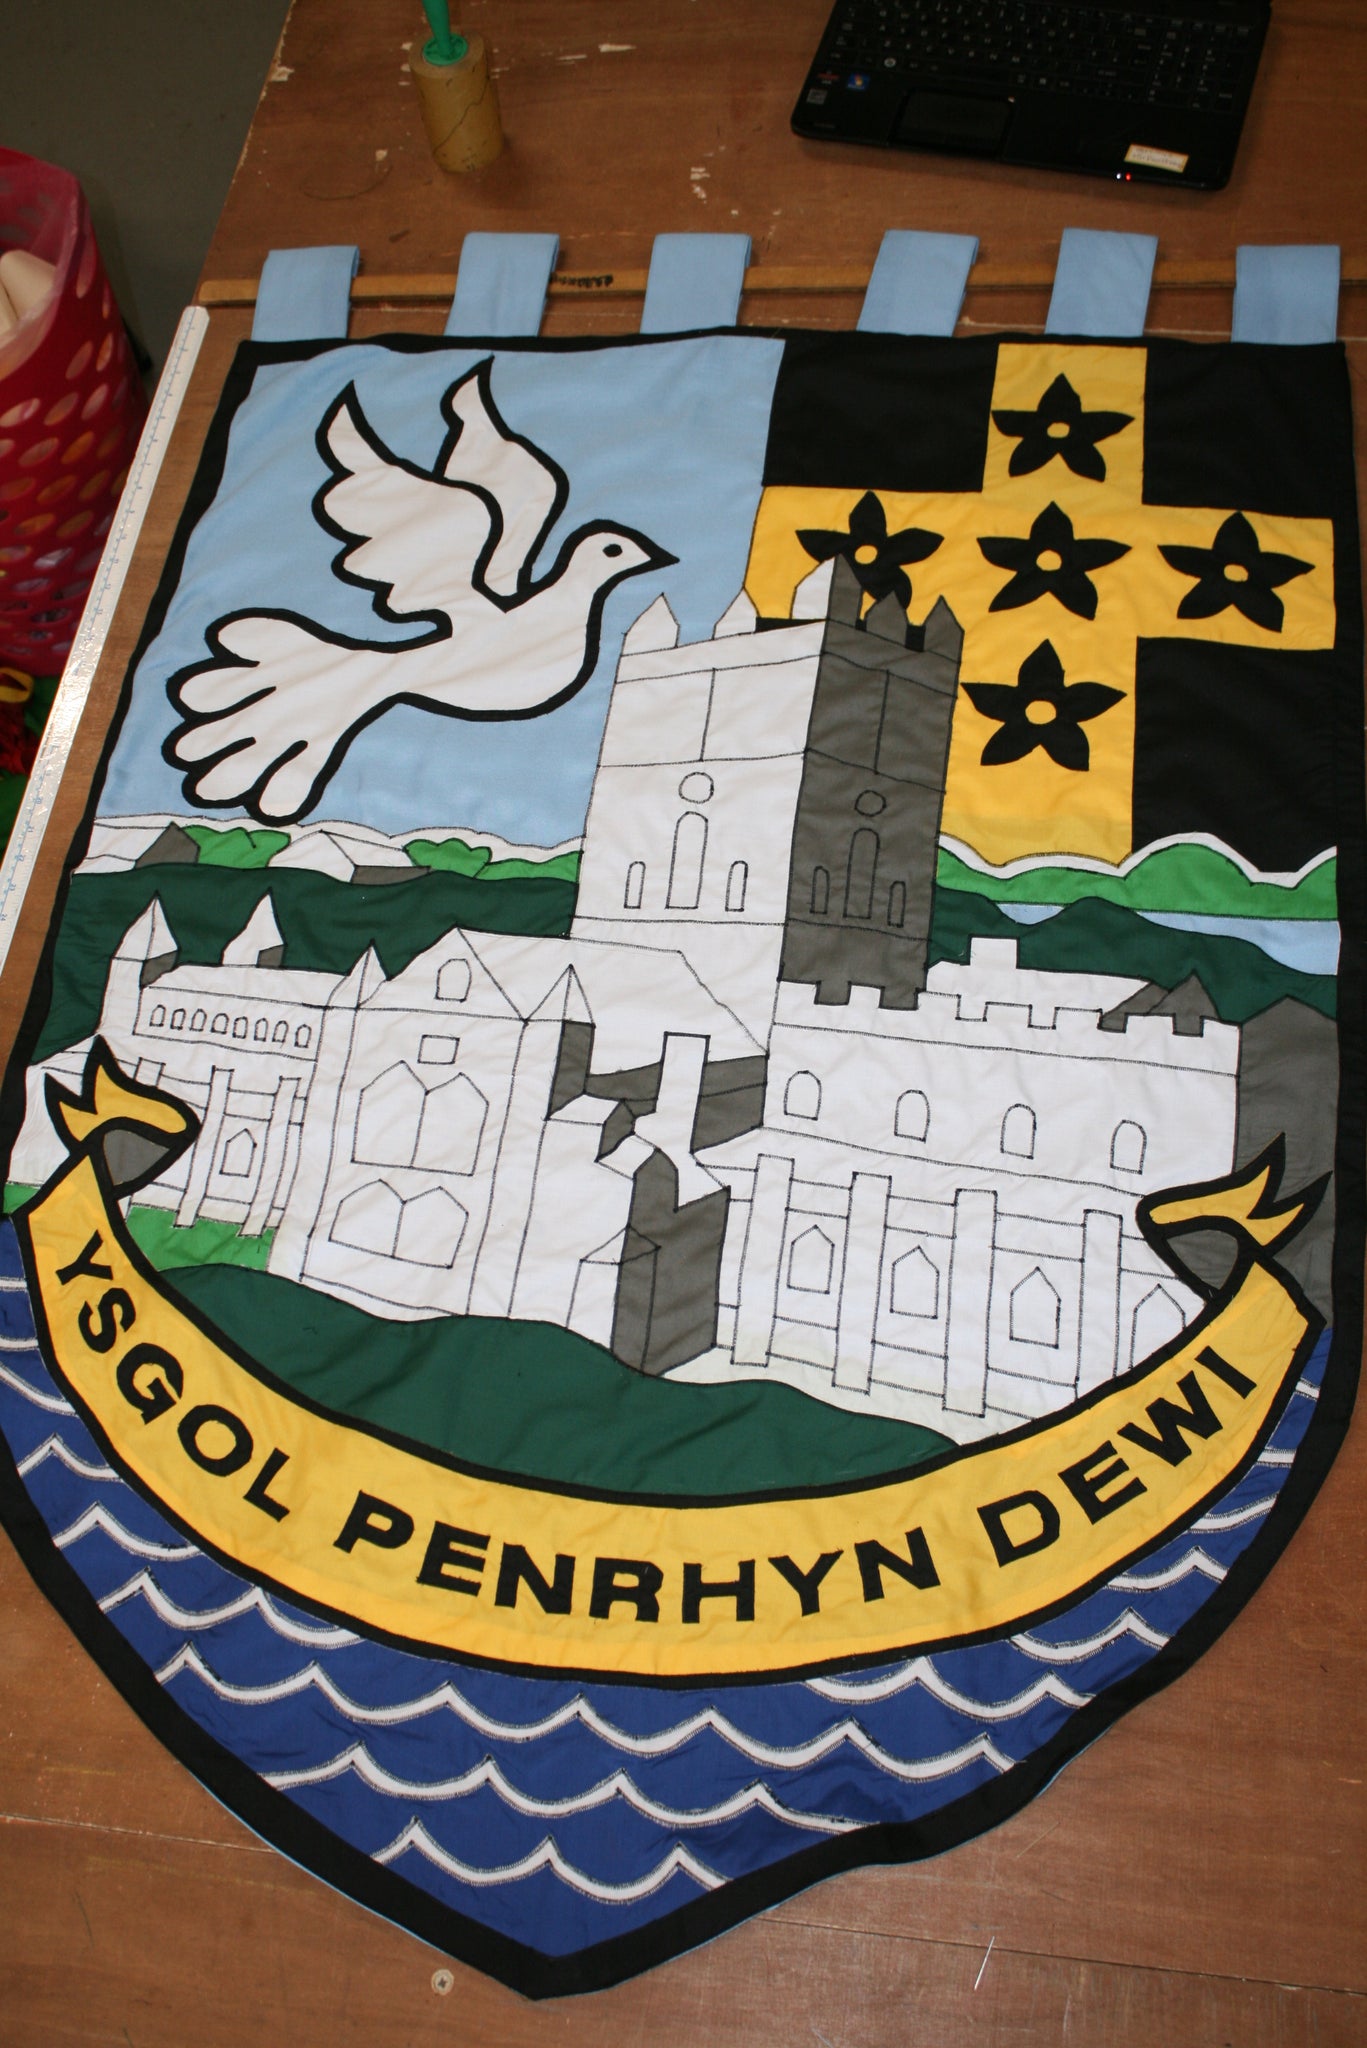 Ysgol dewi sant vexillum gonfalon school banner by Red Dragon Flagmakers